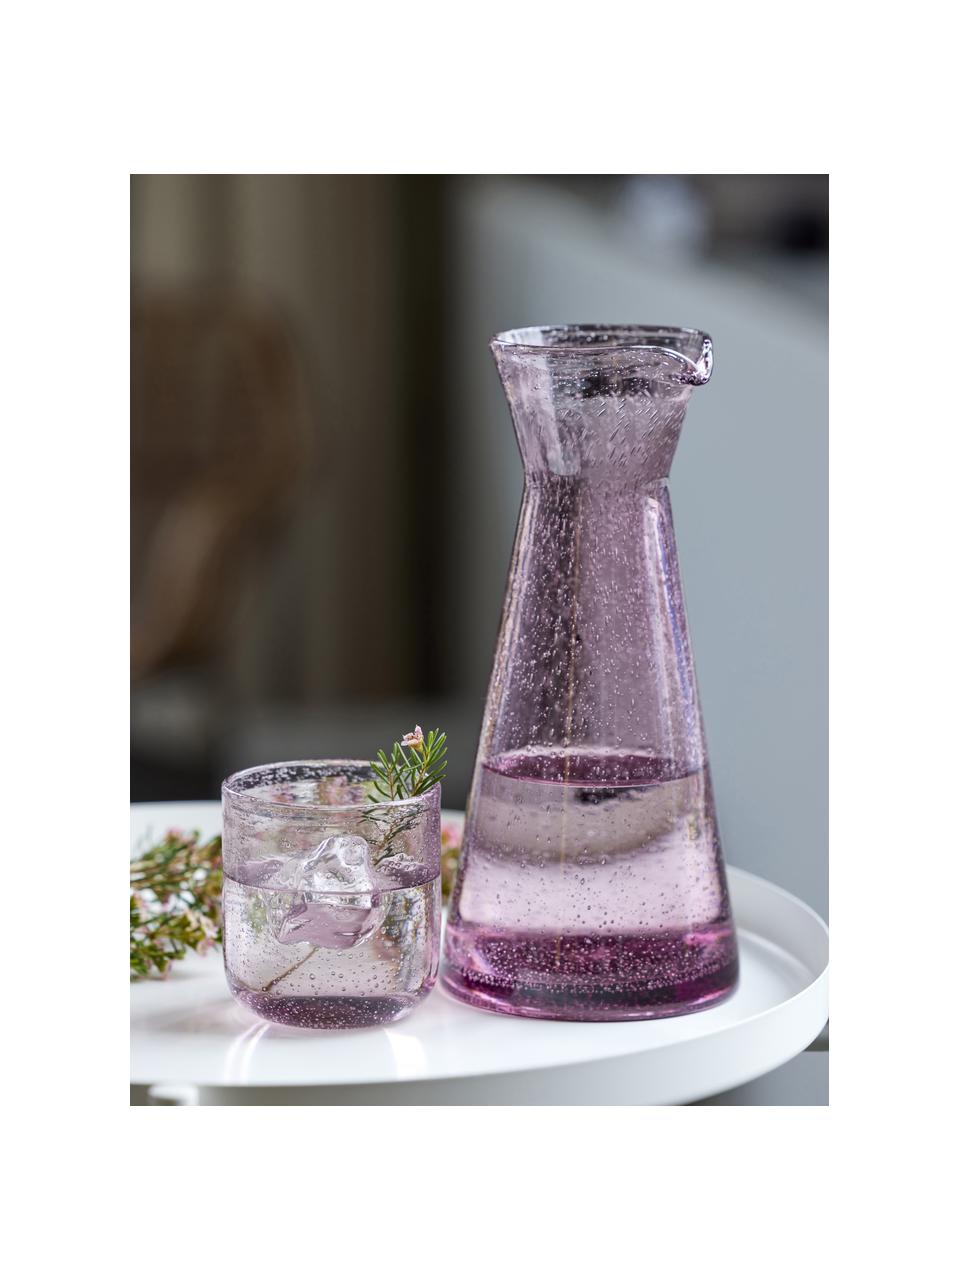 Karaffe Valencia, 1.1 L, Glas, Rosa, transparent, 1.1 l